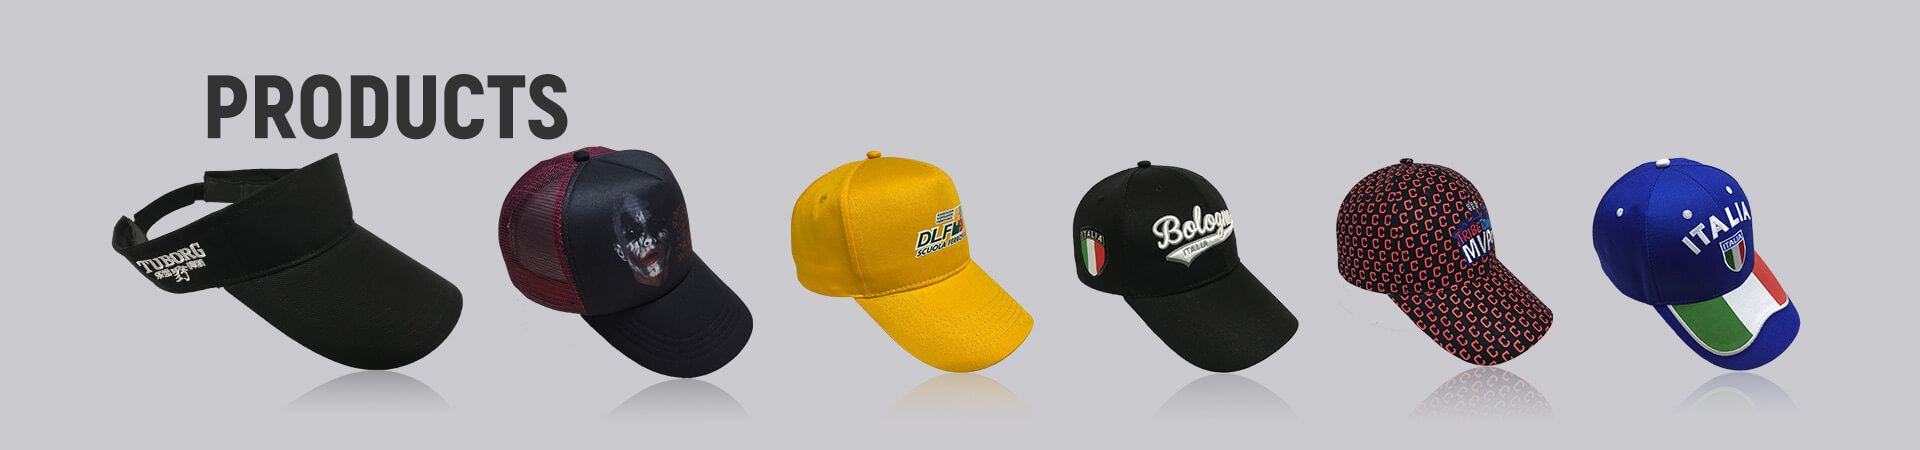 Visière Archives - Casquette de baseball, casquette de sport, casquette de golf, chapeau de seau, chapeau de pêcheur, chapeau de camionneur